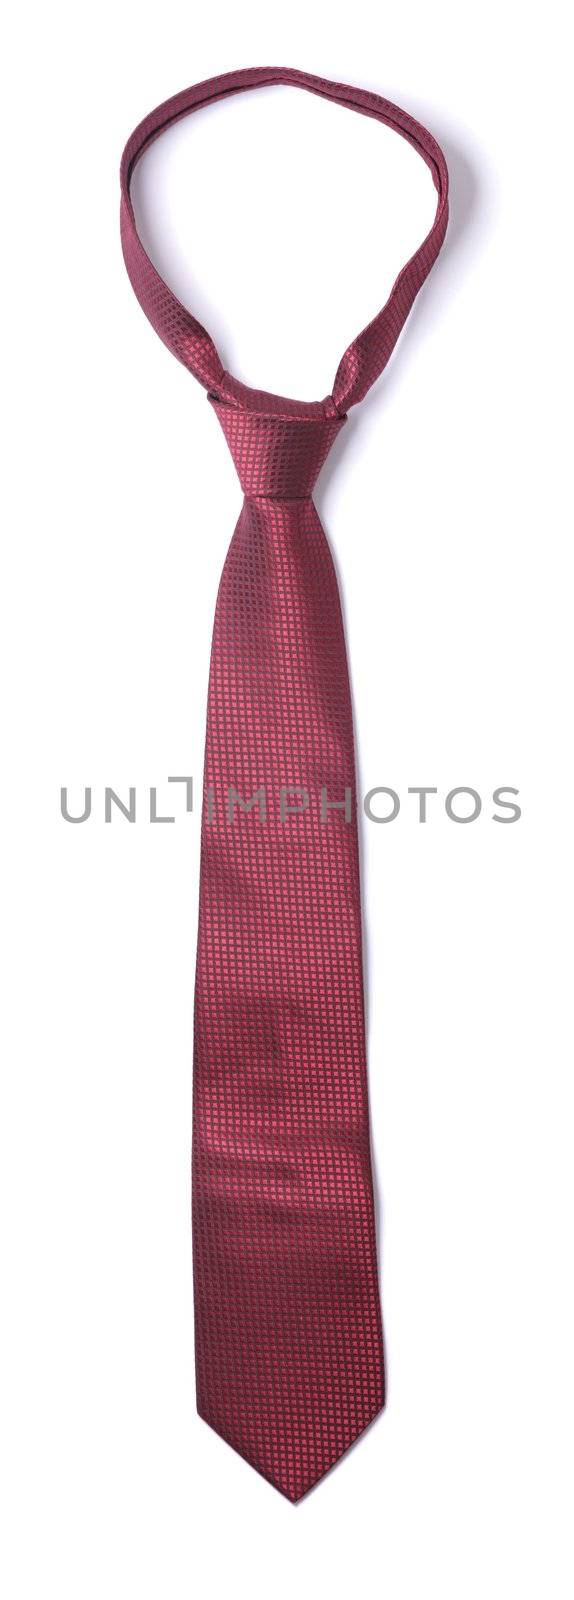 Red silk necktie isolated on white